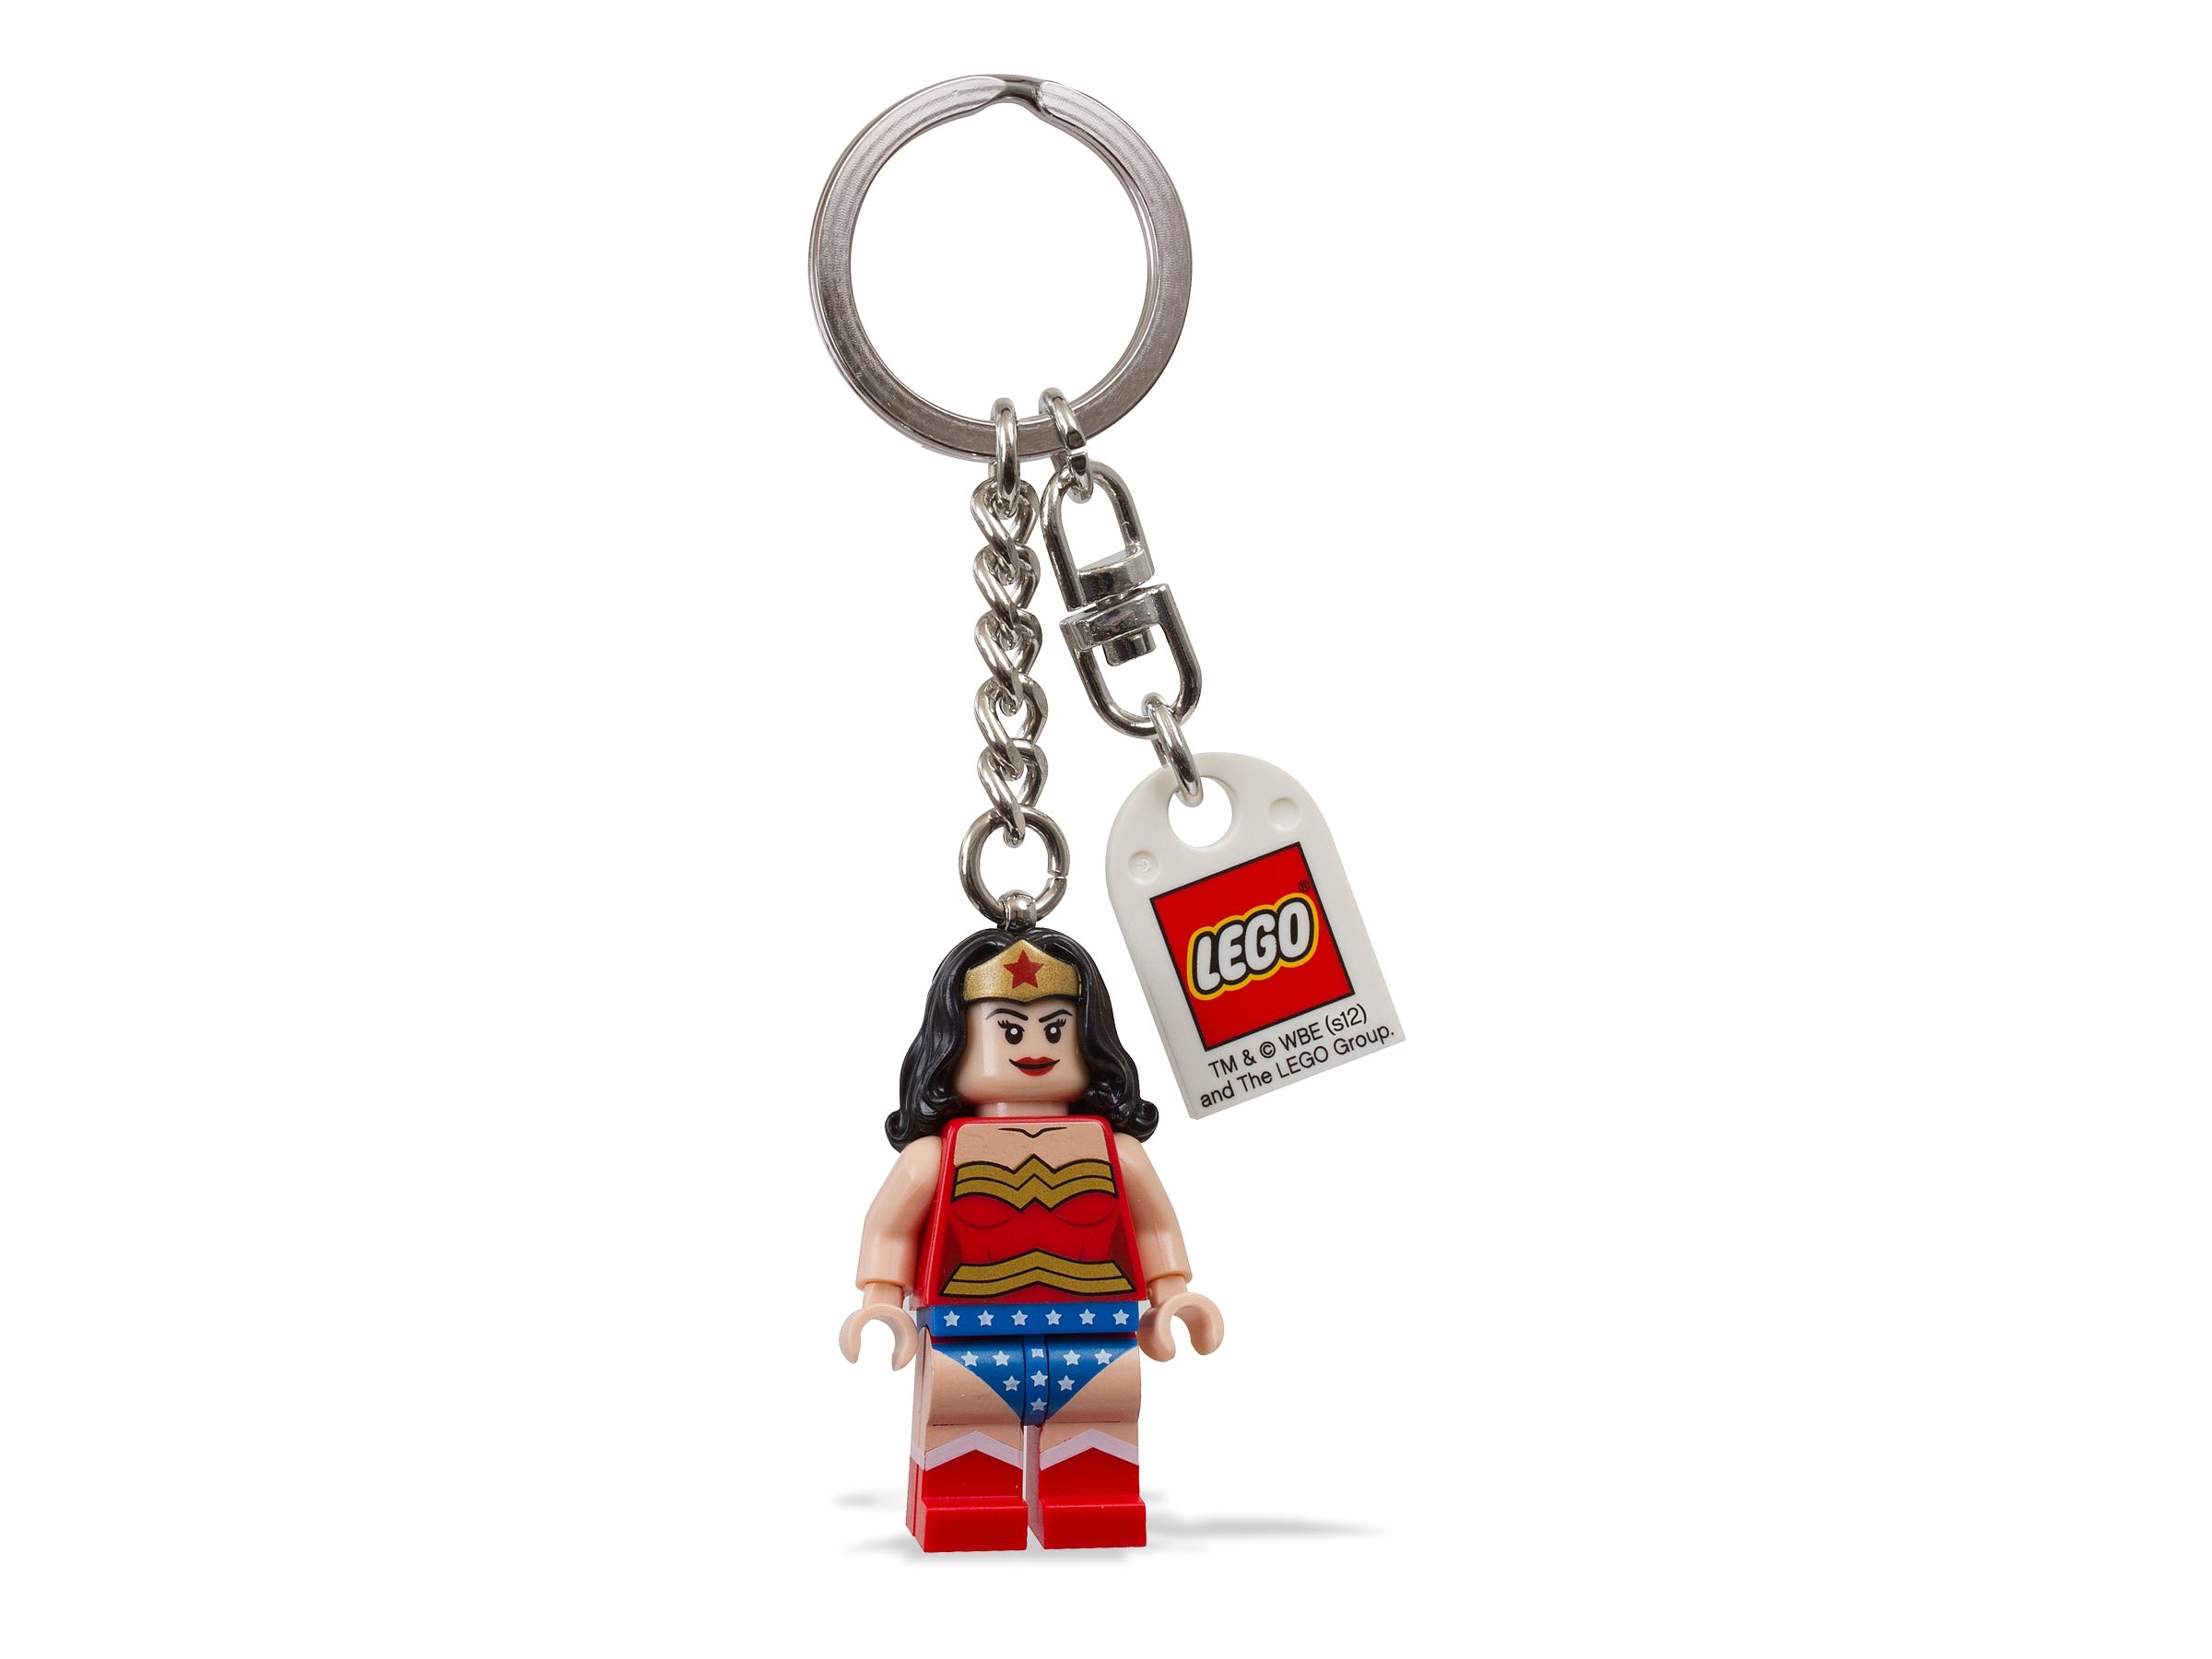 OfferteWeb.click 33-portachiavi-di-i-wonder-woman-i-lego-super-heroes